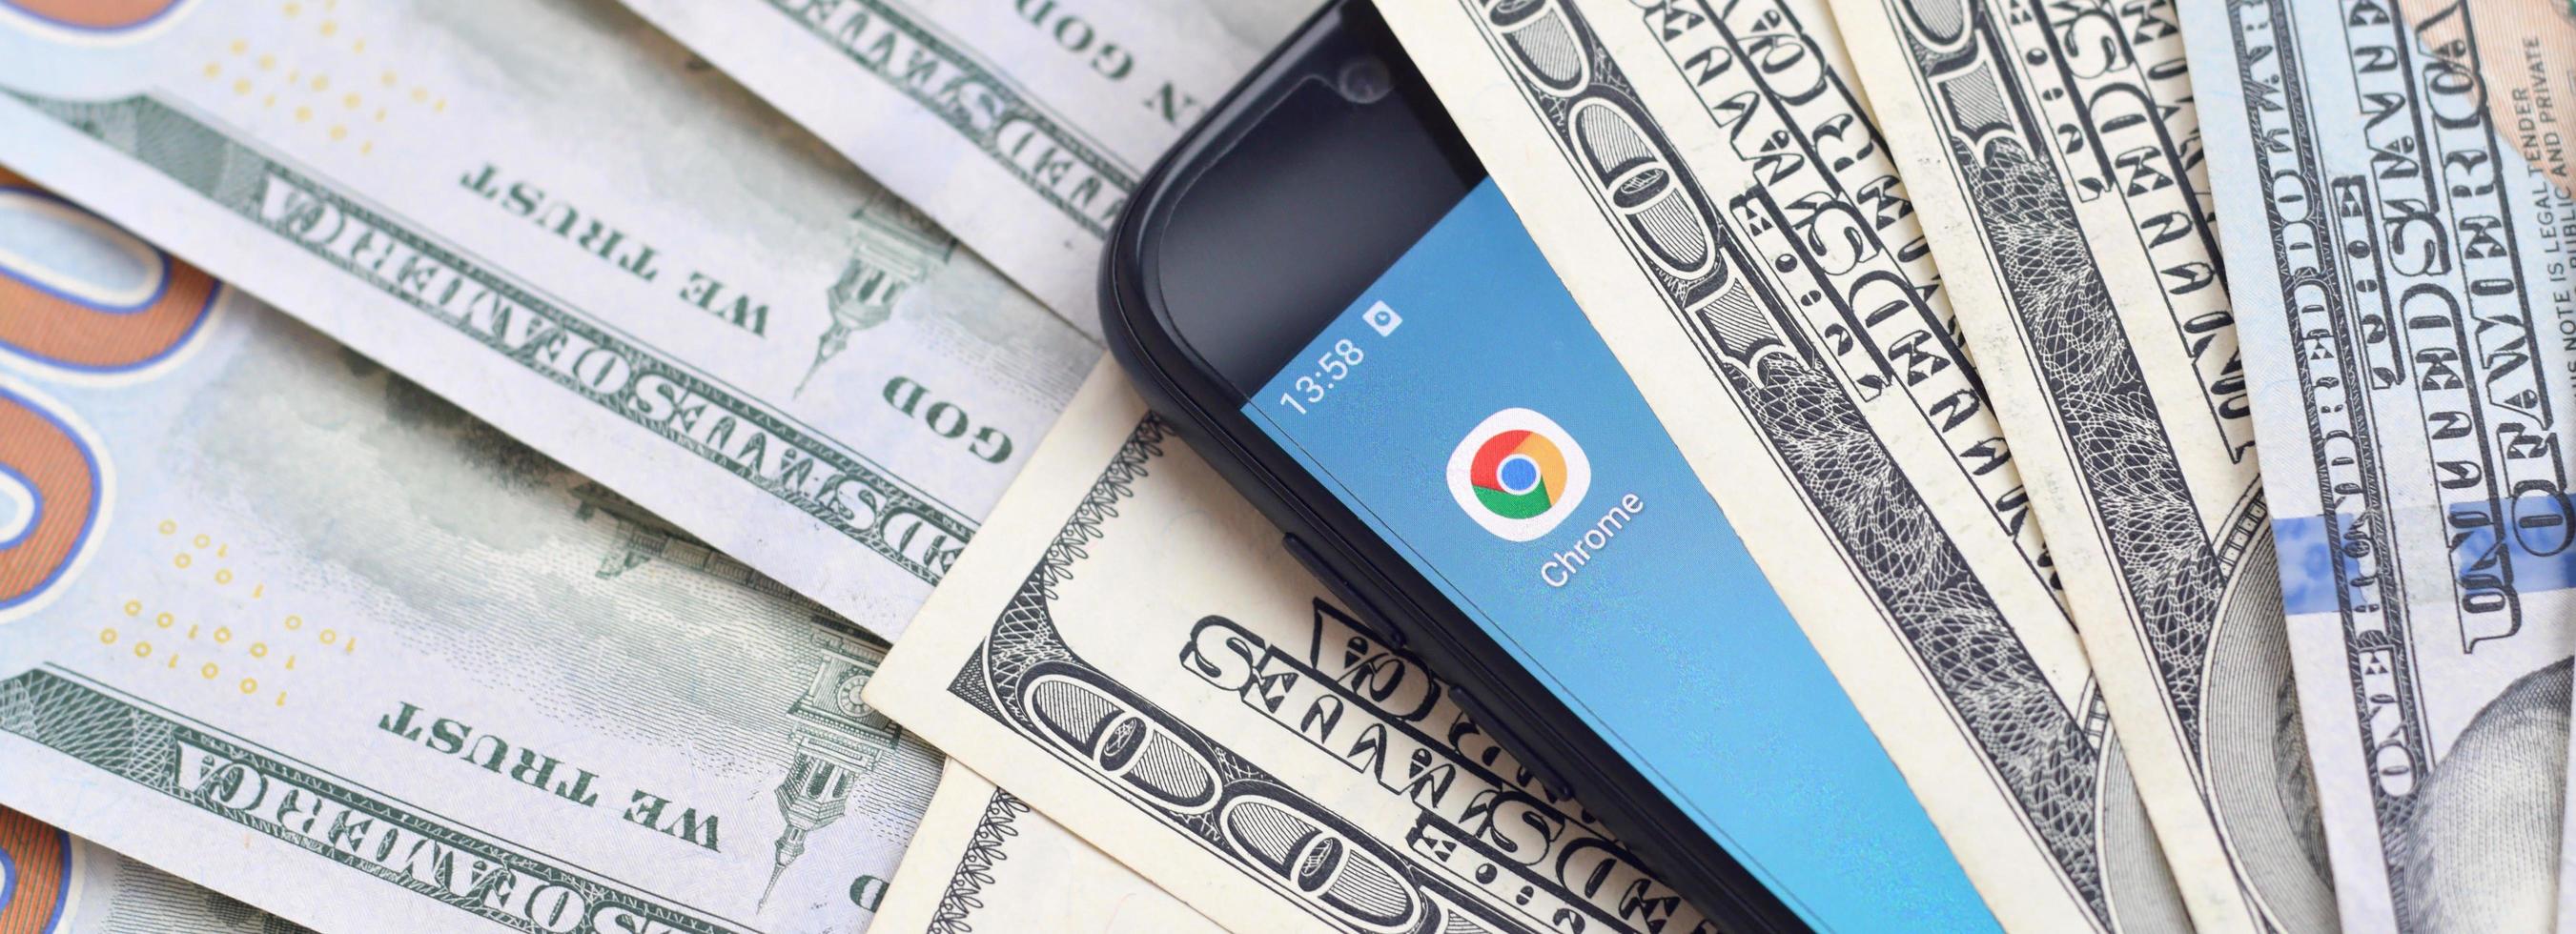 smartphone skärm med Google krom app och massa av hundra dollar räkningar. företag och social nätverkande begrepp foto